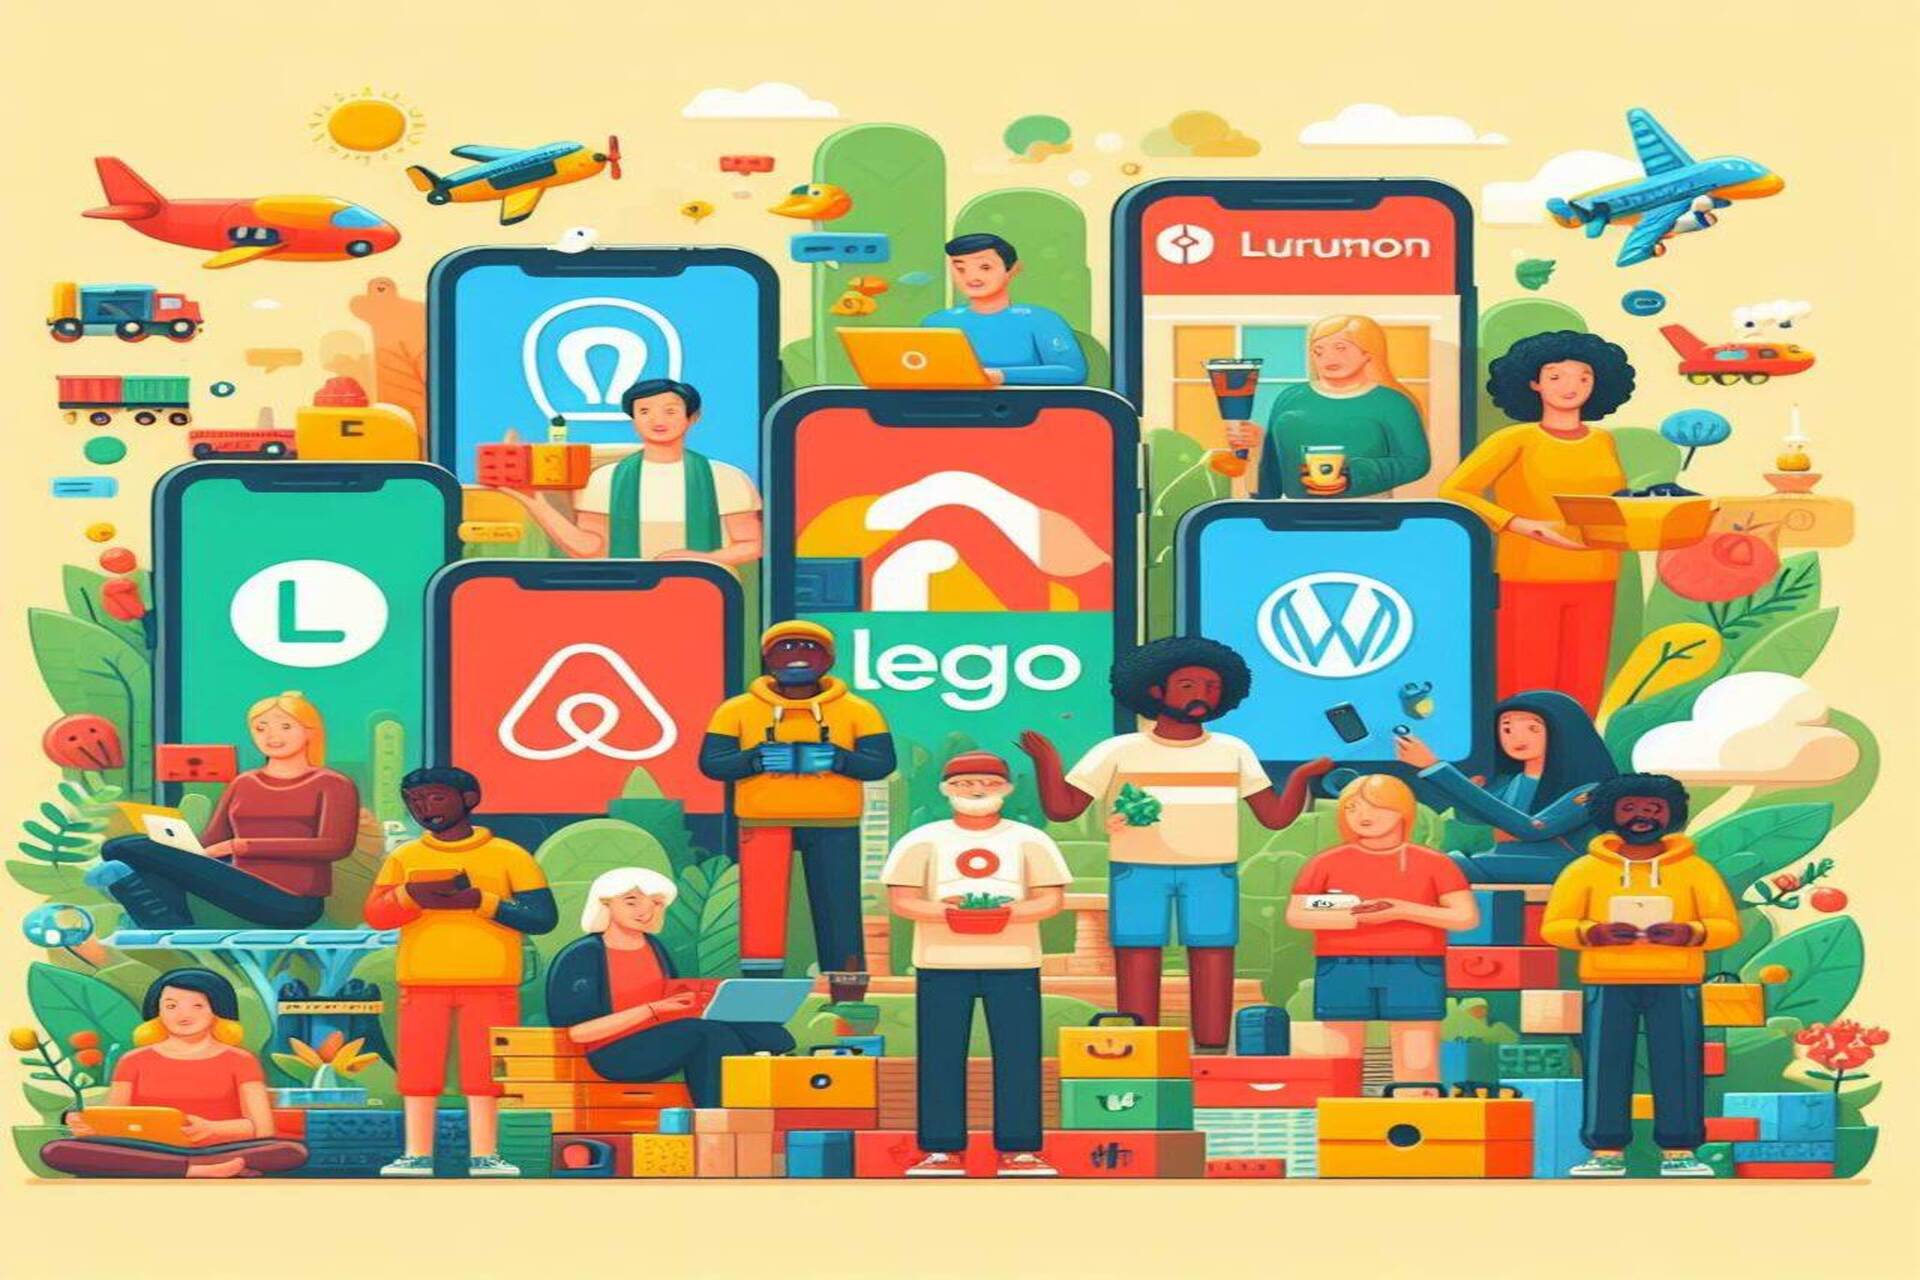 Comunitate și mulțime: Airbnb, Etsy, GitHub, Stack Overflow, Lego Ideas, WordPress, Linux și Lululemon sunt exemple perfecte de aplicații „comunității”